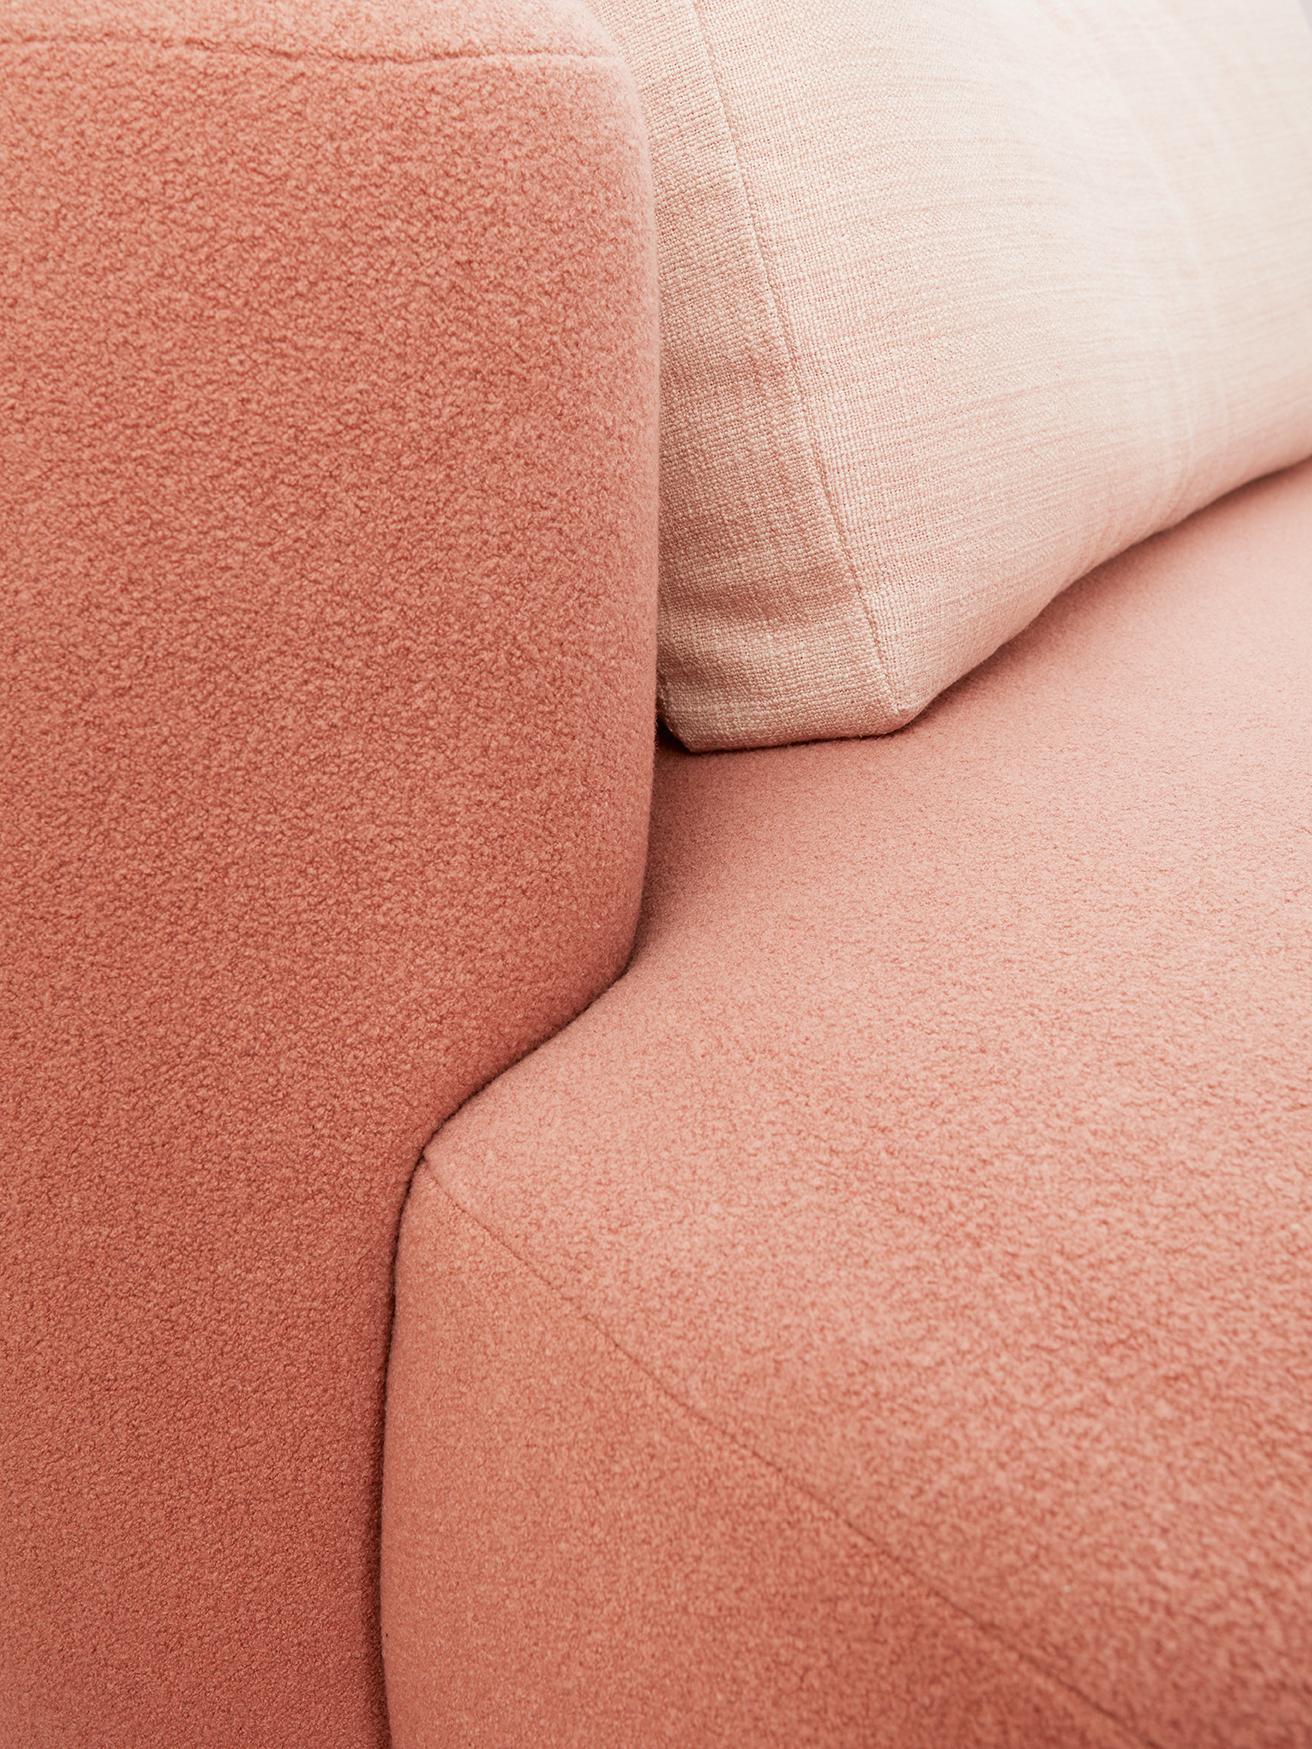 Upholstery Pink Baba Sofa by Gisbert Pöppler